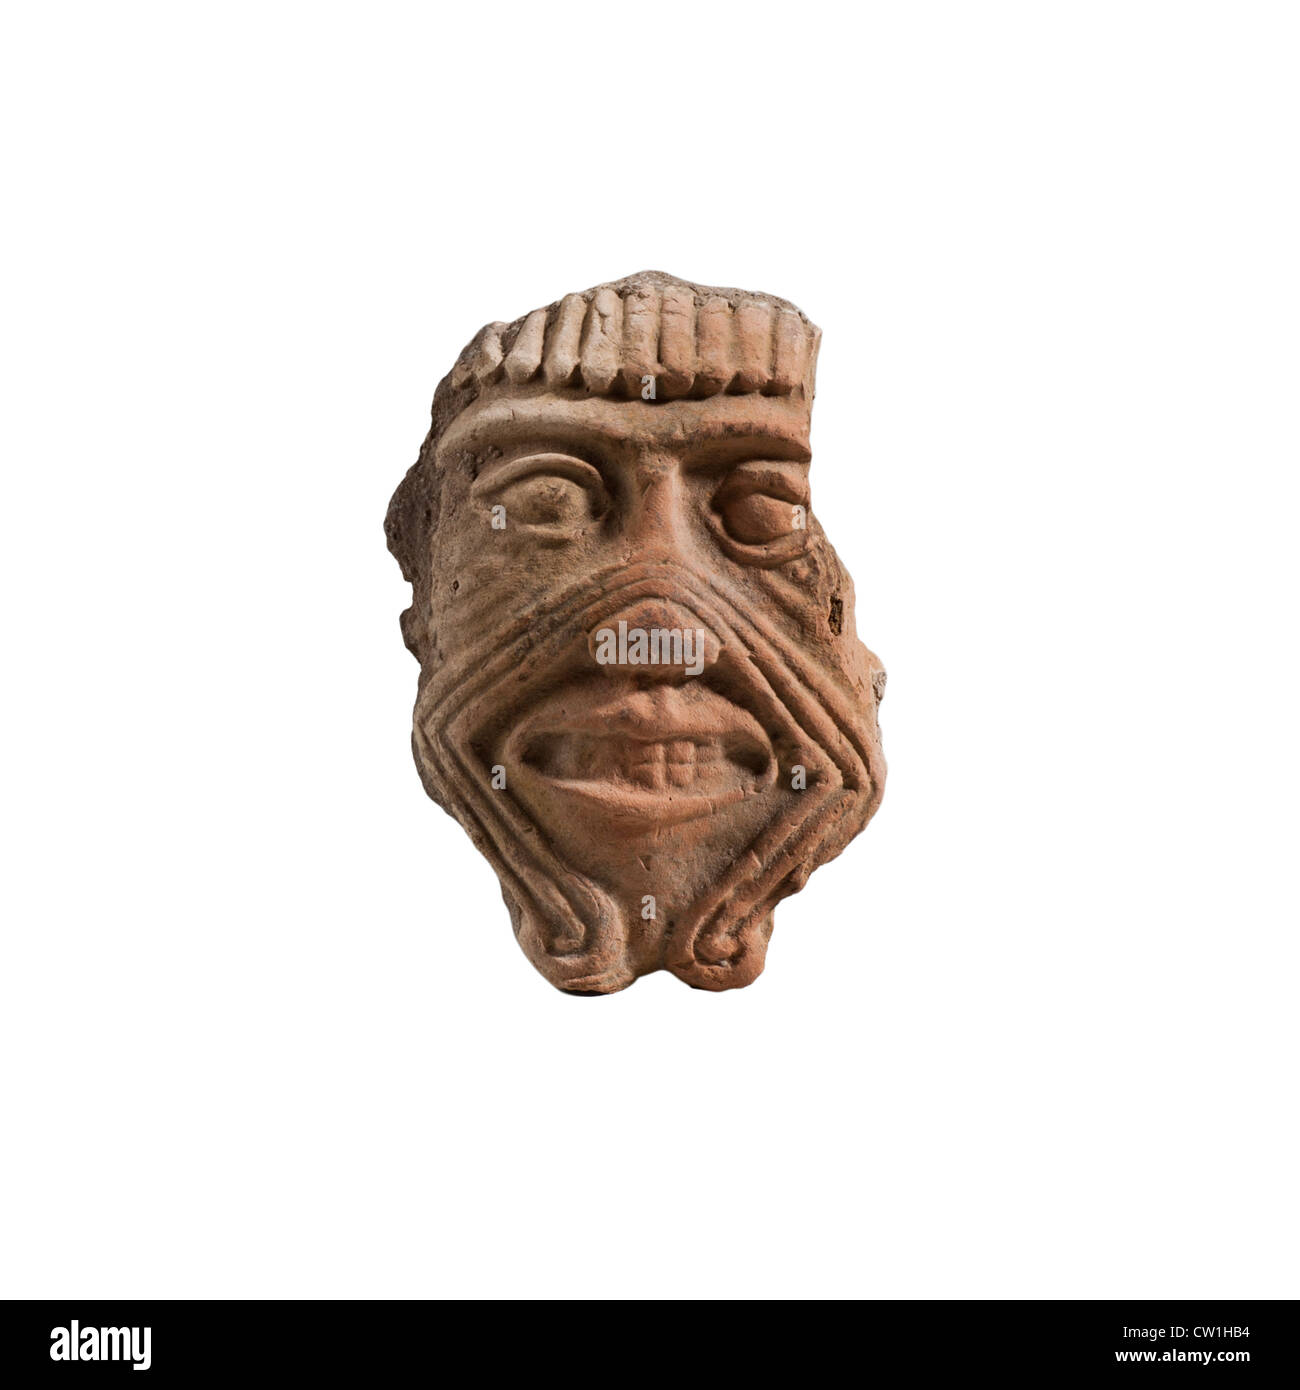 Masque en terre cuite de Humbaba l'Assyrien gardien de la forêt de cèdres, 2e millénaire BCE Banque D'Images